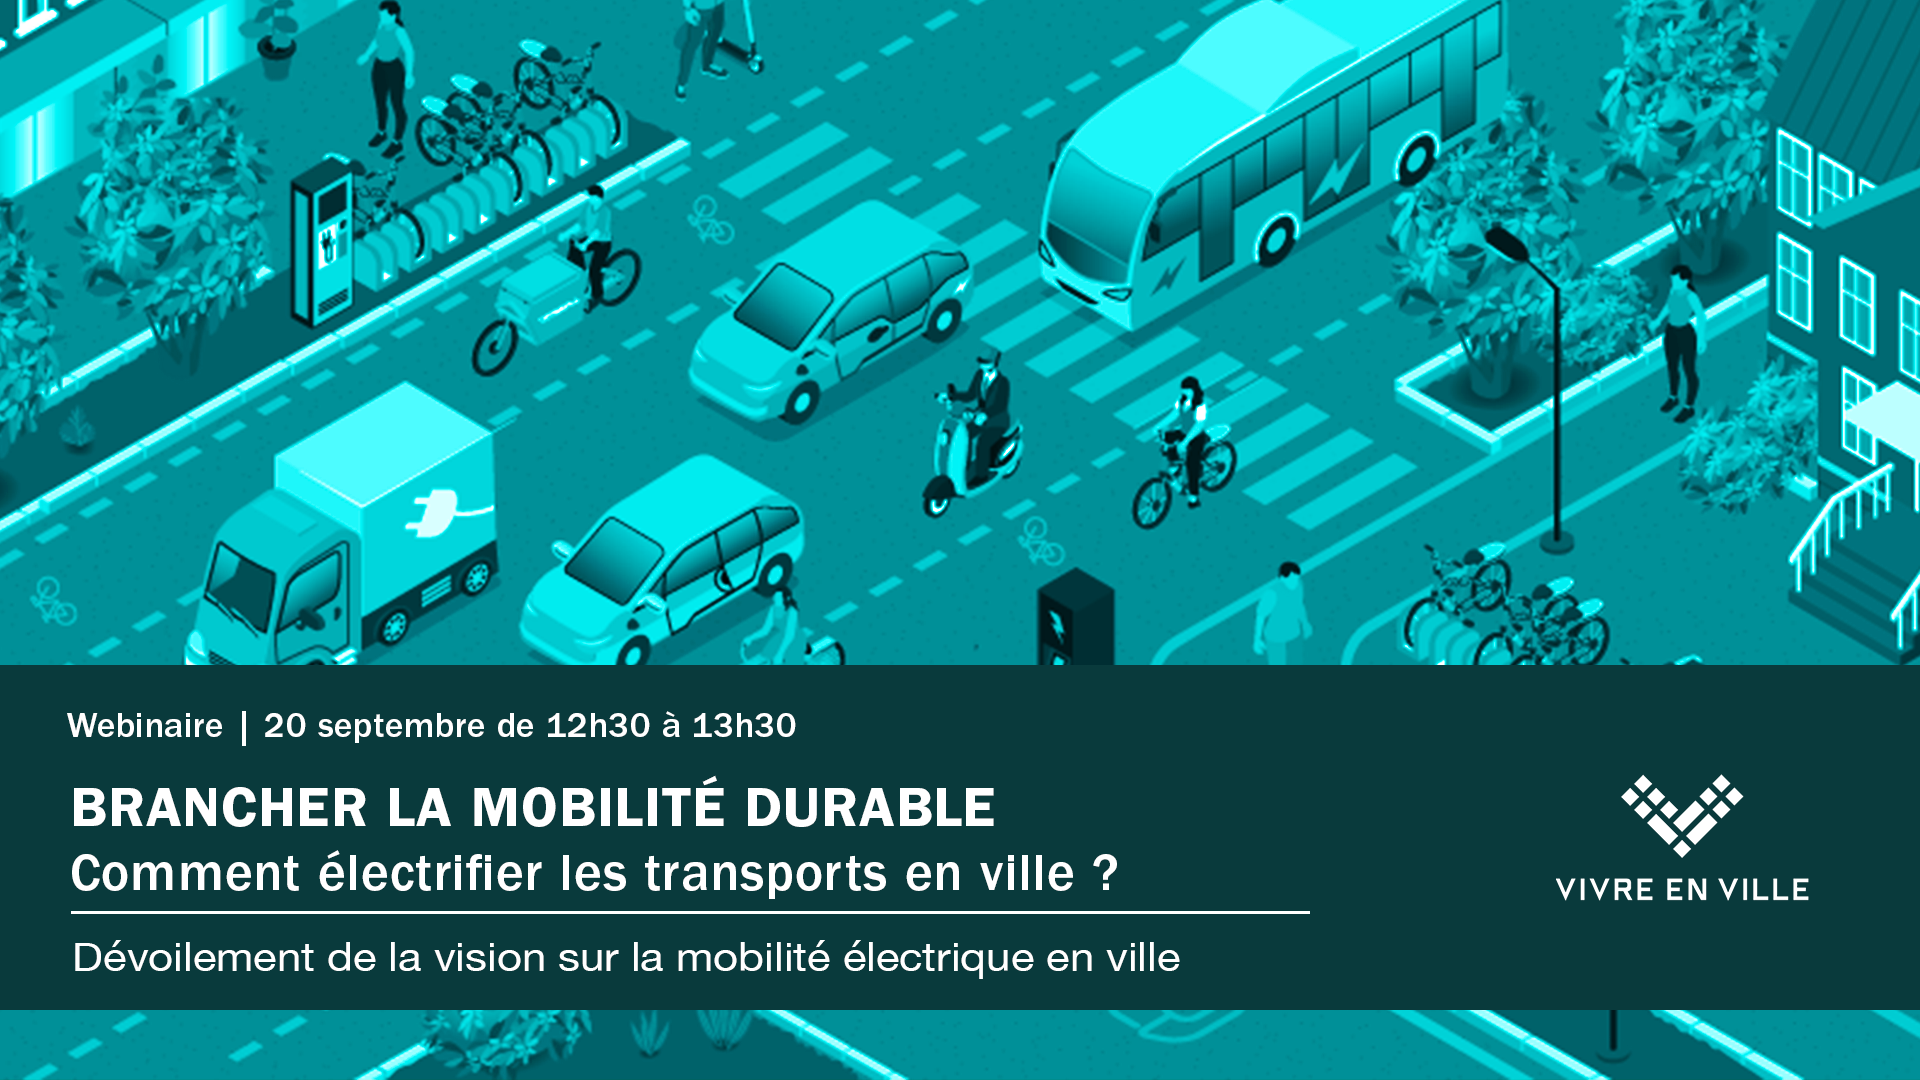 Brancher la mobilité durable - Comment électrifier les transports en ville ?